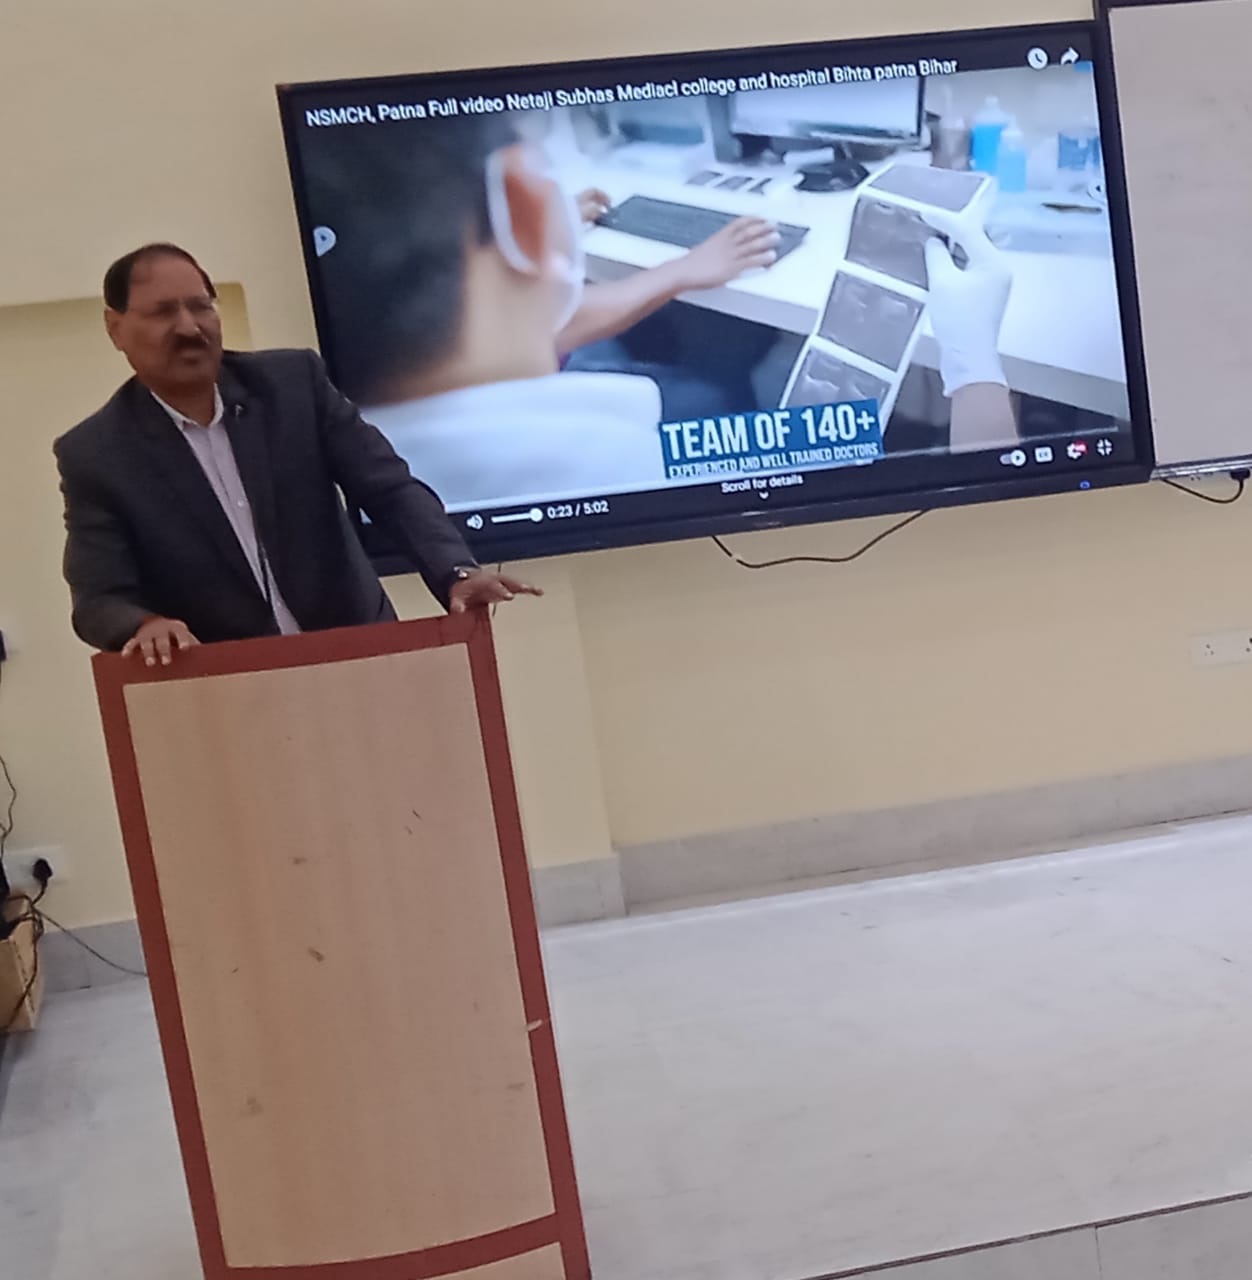 आईआईटी पटना के निदेशक प्रोफेसर टीएन सिंह ने मेडिकल कॉलेज के प्रथम वर्ष के छात्रों को संबोधित करते हुए 